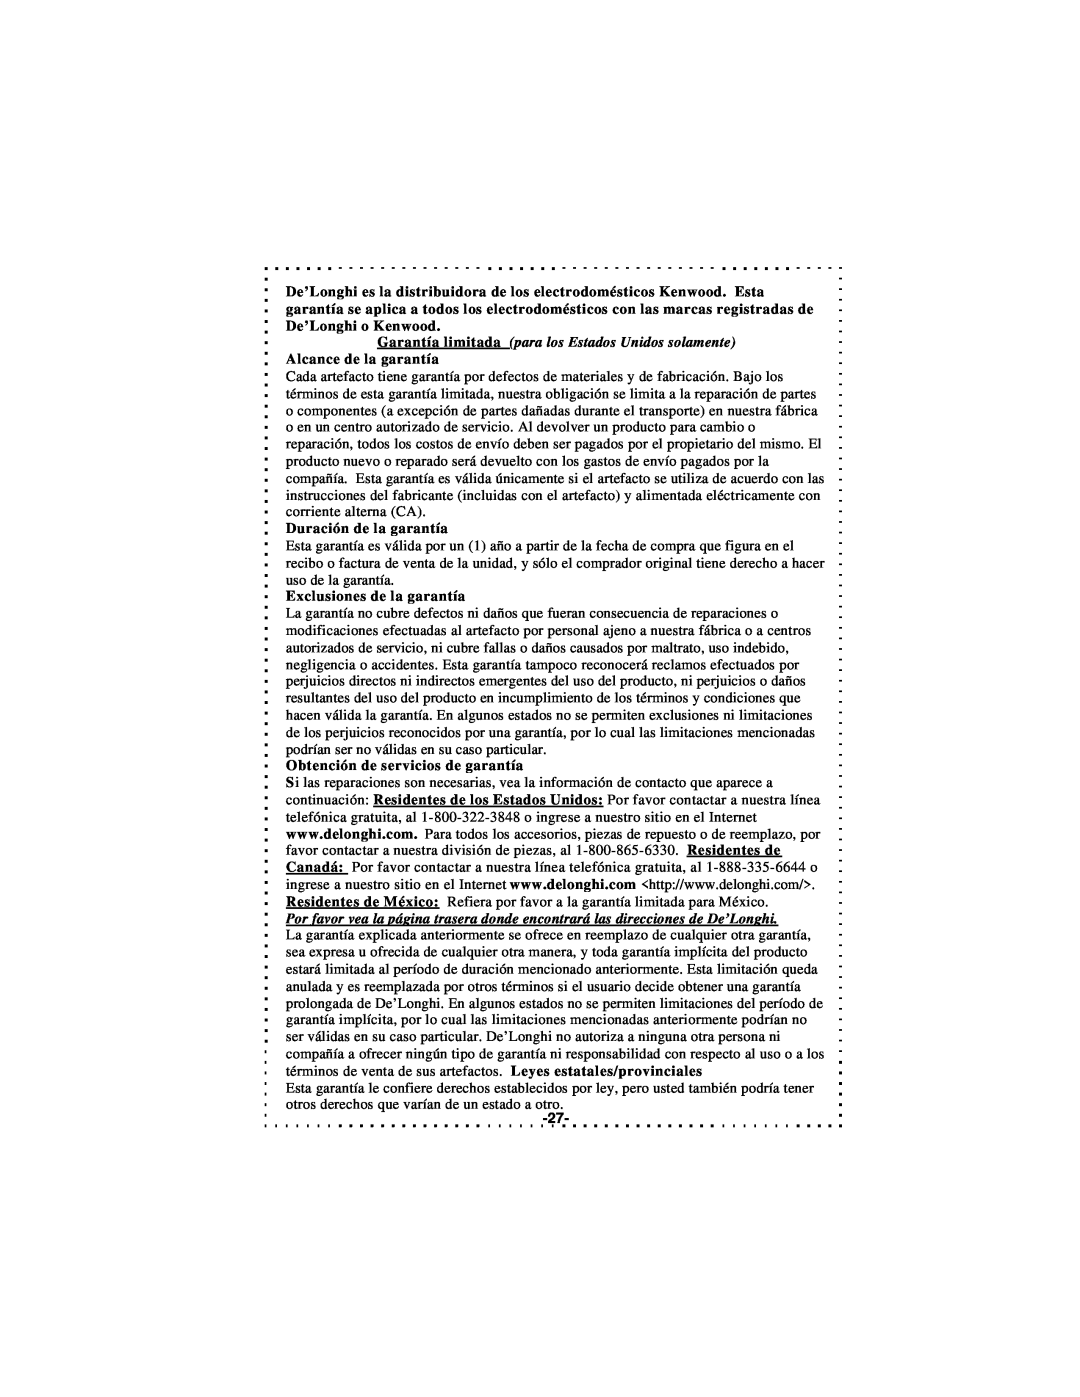 DeLonghi DSJ900 instruction manual Duración de la garantía, Exclusiones de la garantía, Obtención de servicios de garantía 